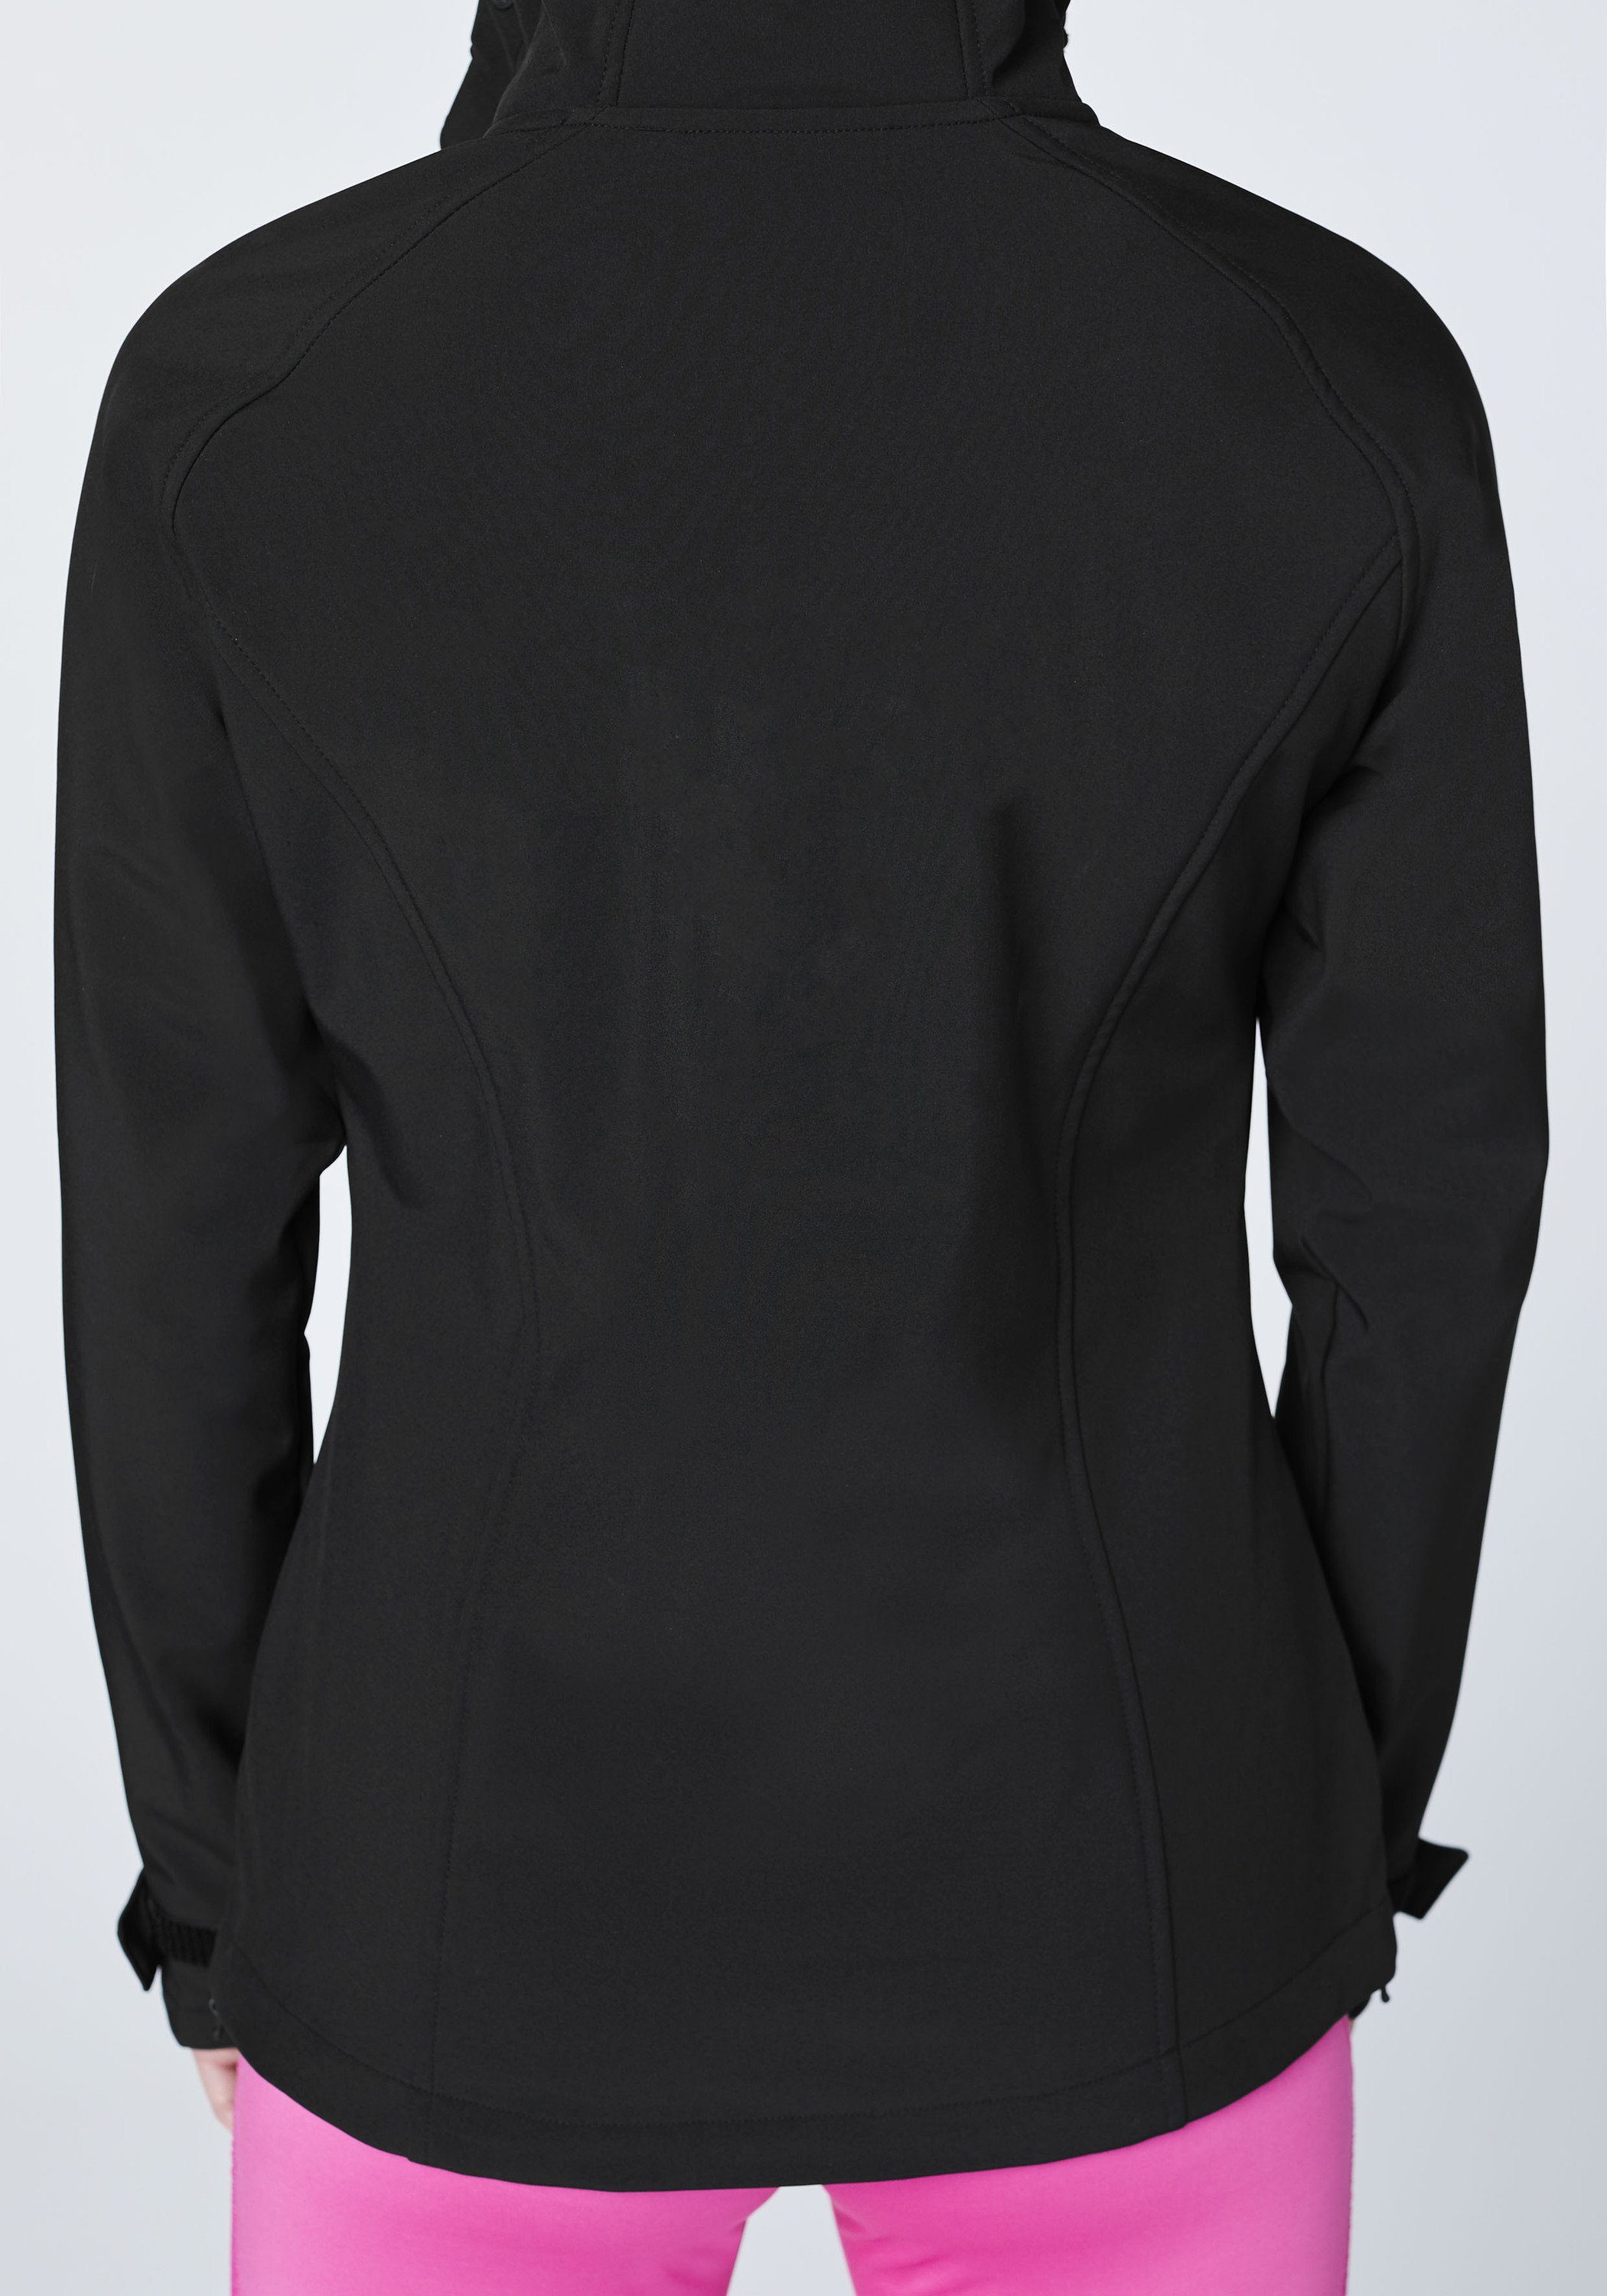 1 Softshell-Jacke Design im funktionalen schwarz Softshelljacke Chiemsee